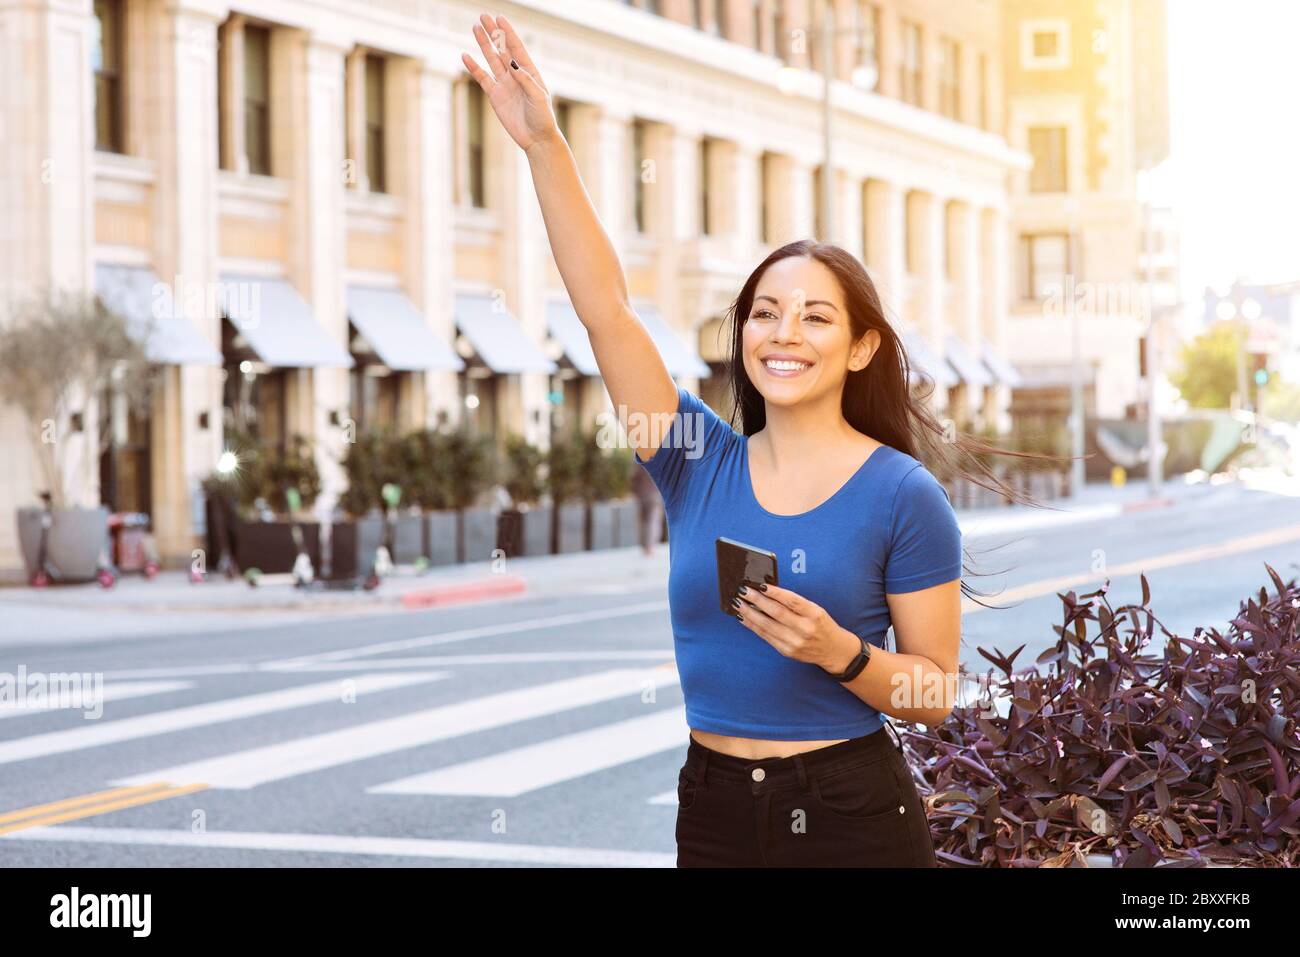 Junge Frau von Farbe winkt ihre Hand, um eine Mitfahrgelegenheit in der Stadt - uber - Lyft - tagsüber zu nennen Stockfoto